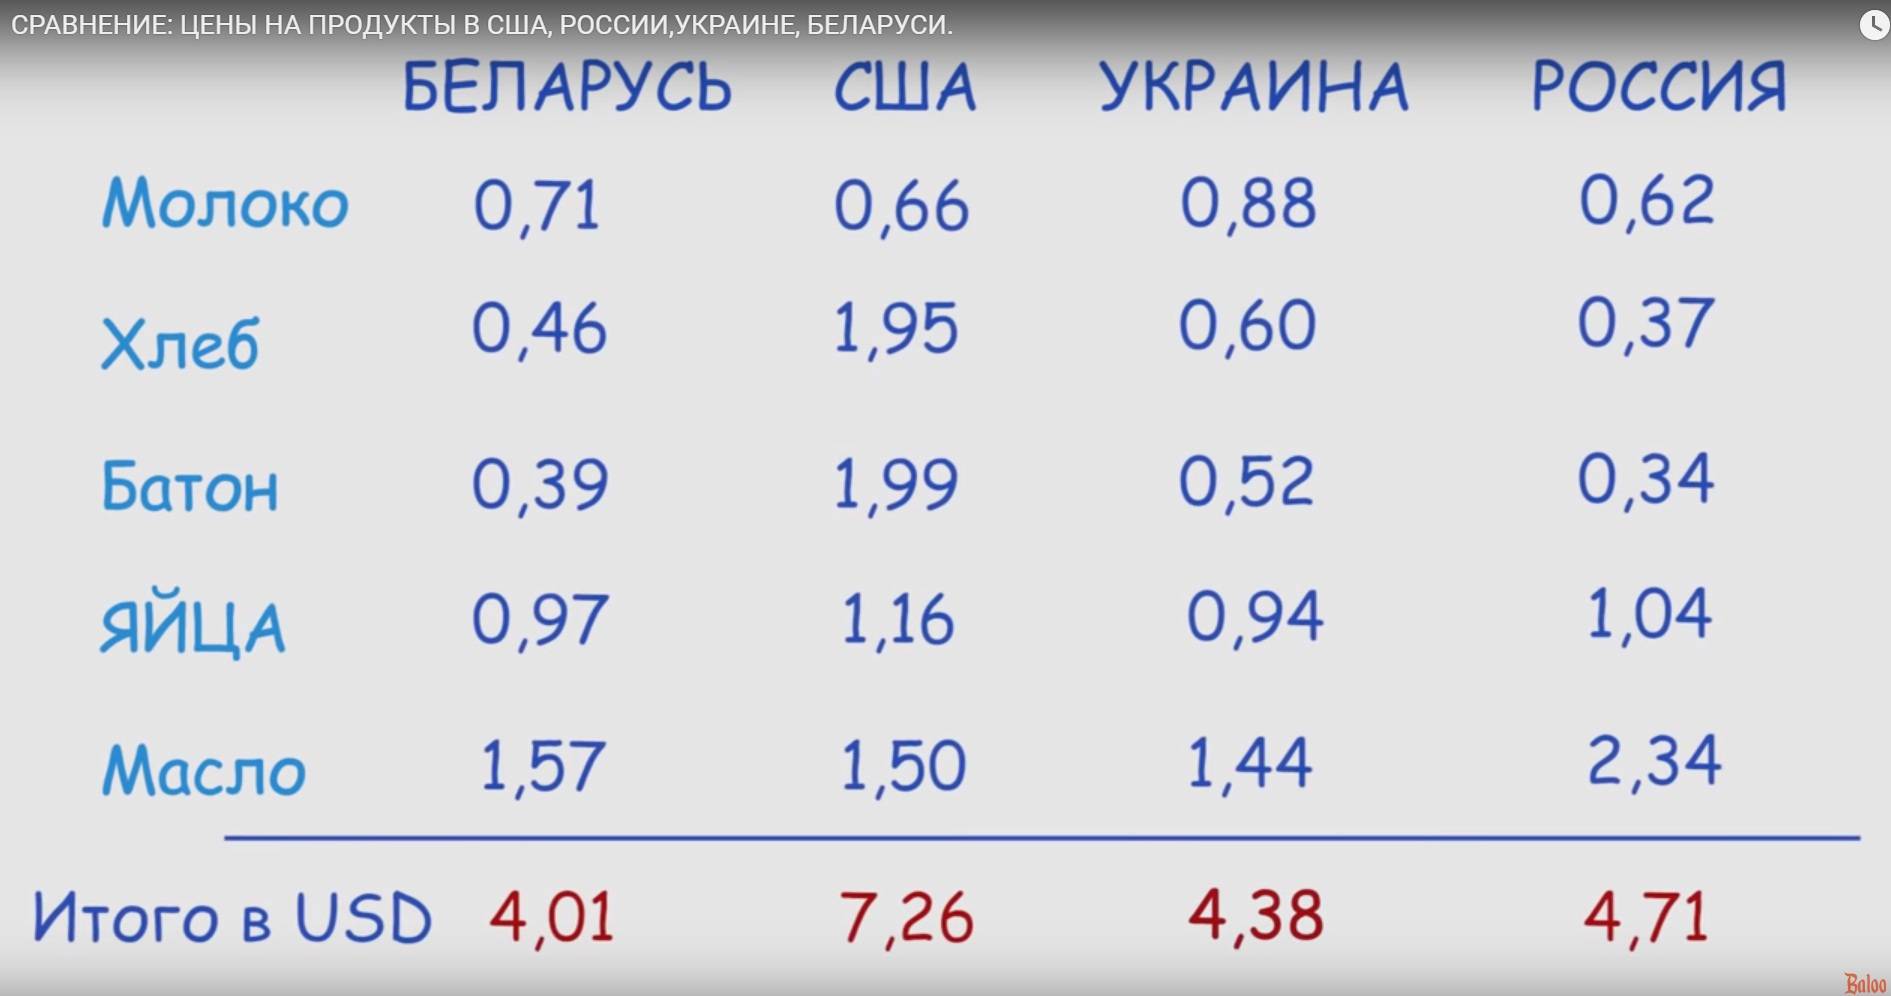 сравнение россии и сша